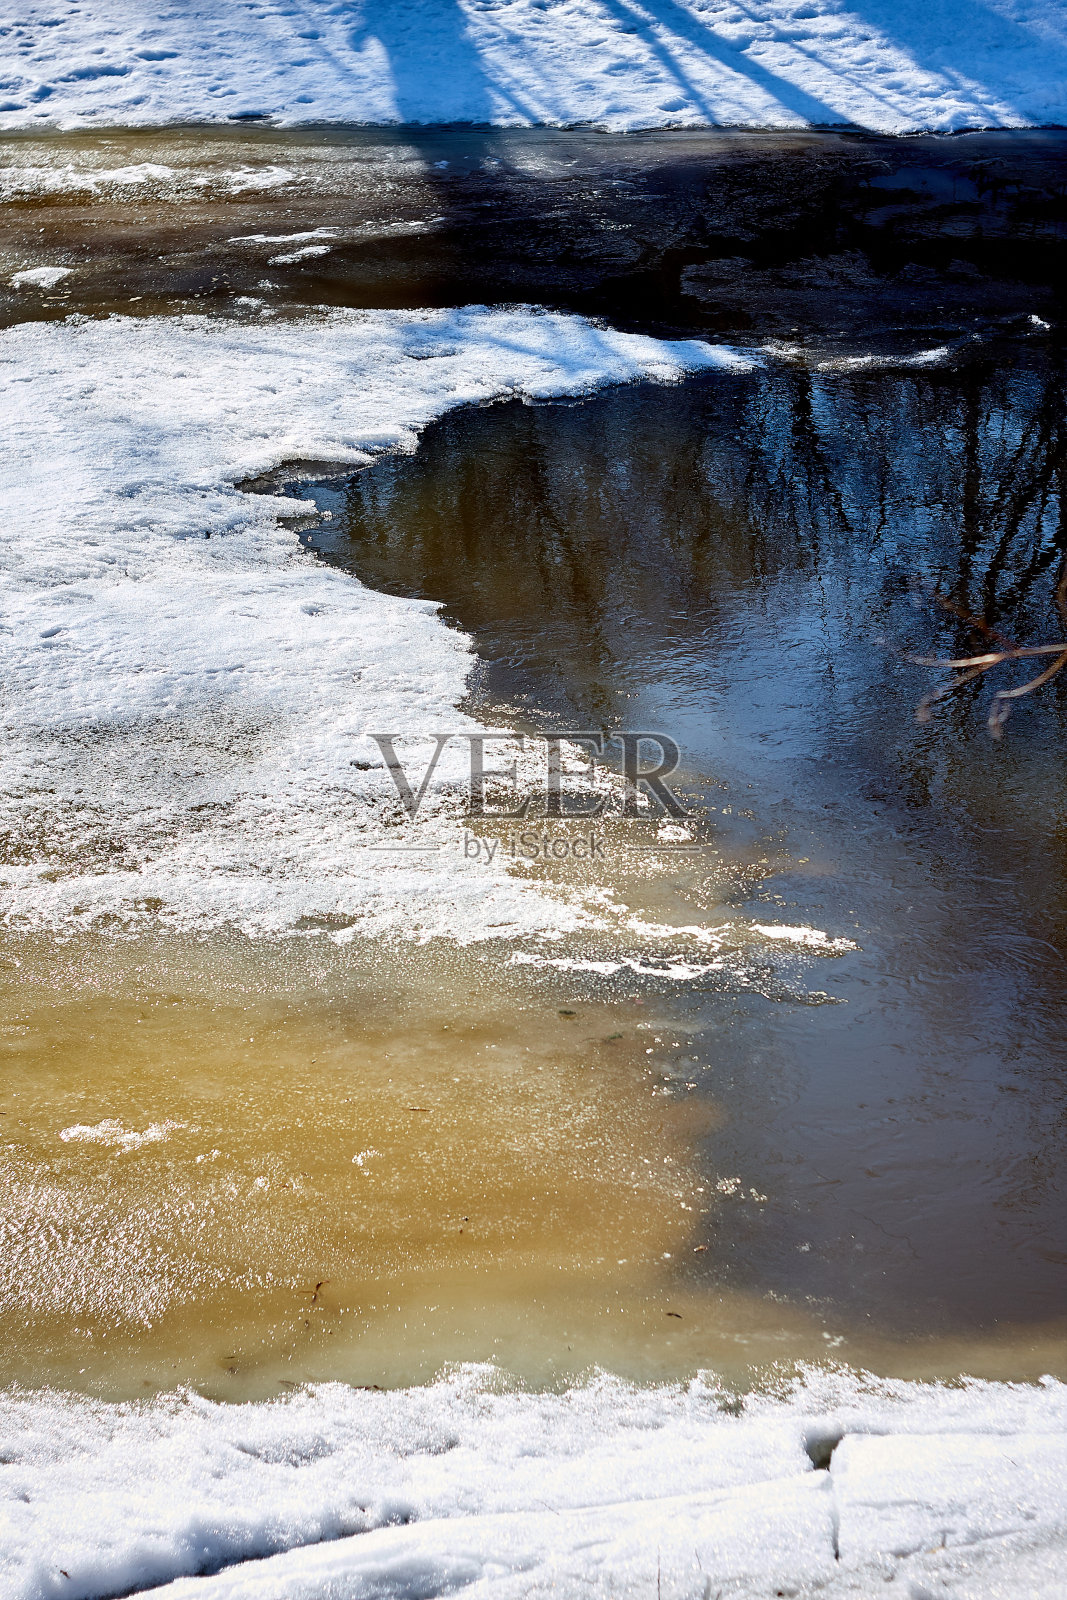 欧沙河上的春冰照片摄影图片